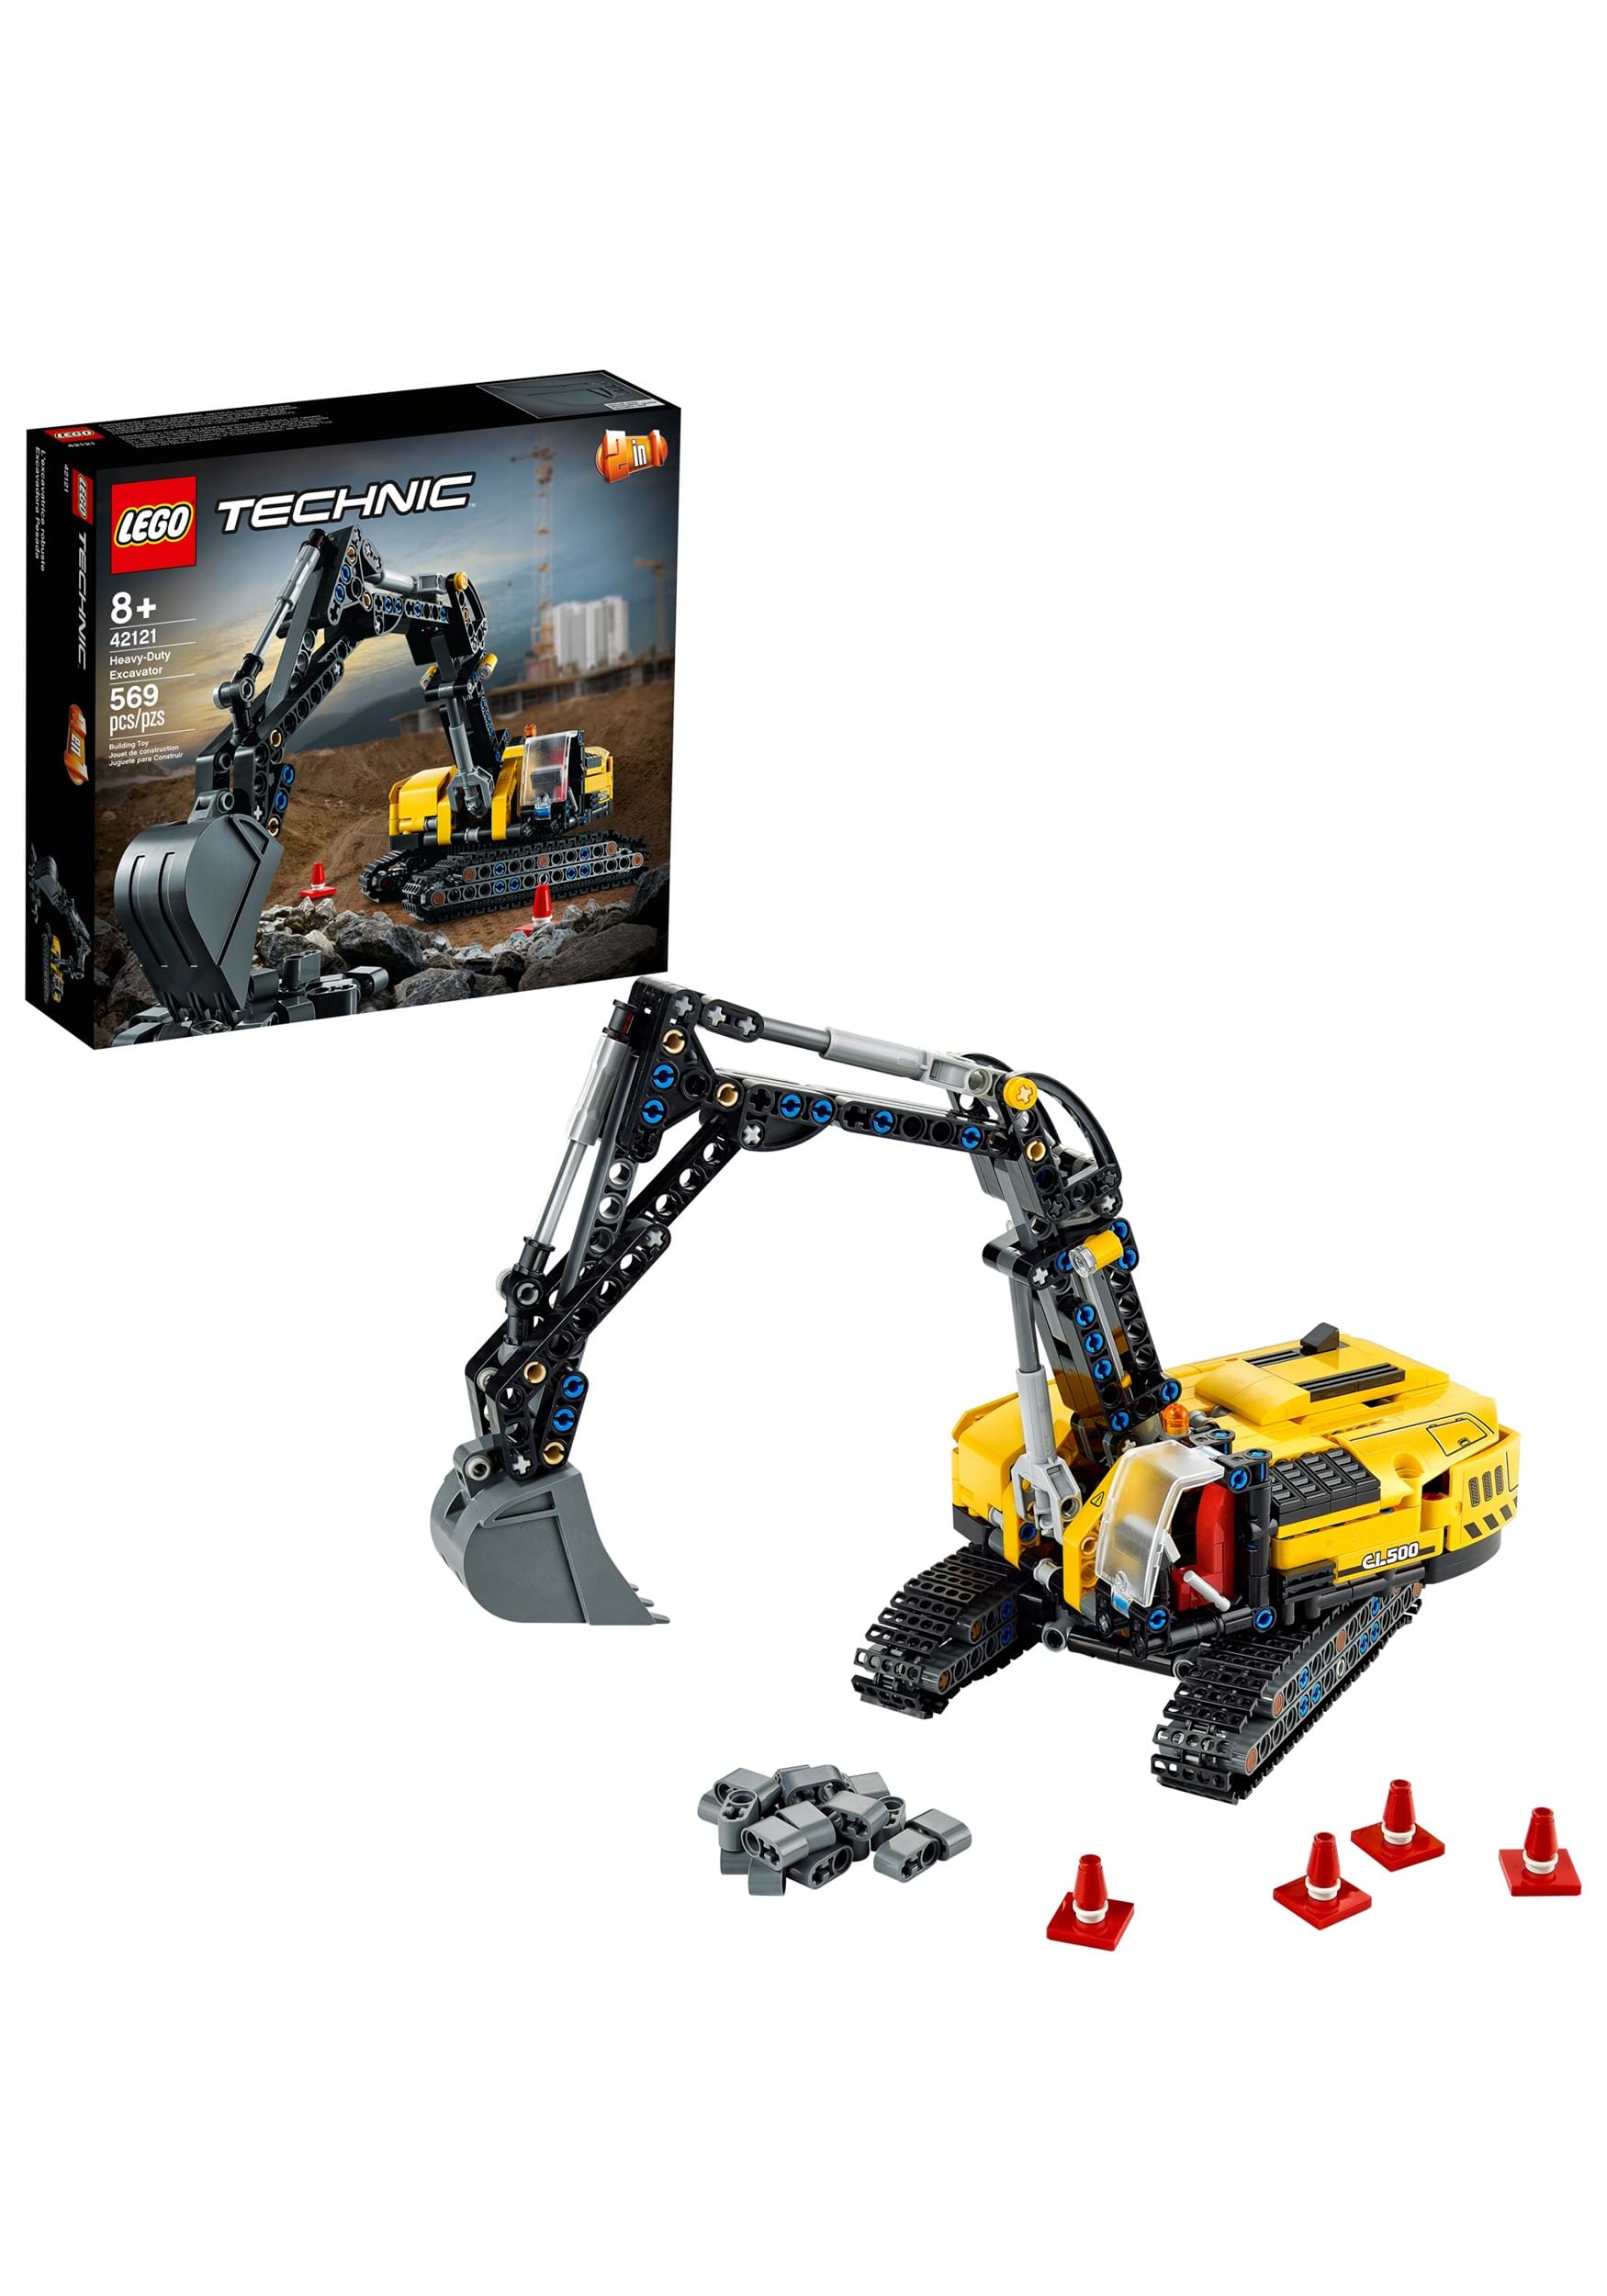 Heavy-Duty Excavator LEGO Technic Building Set